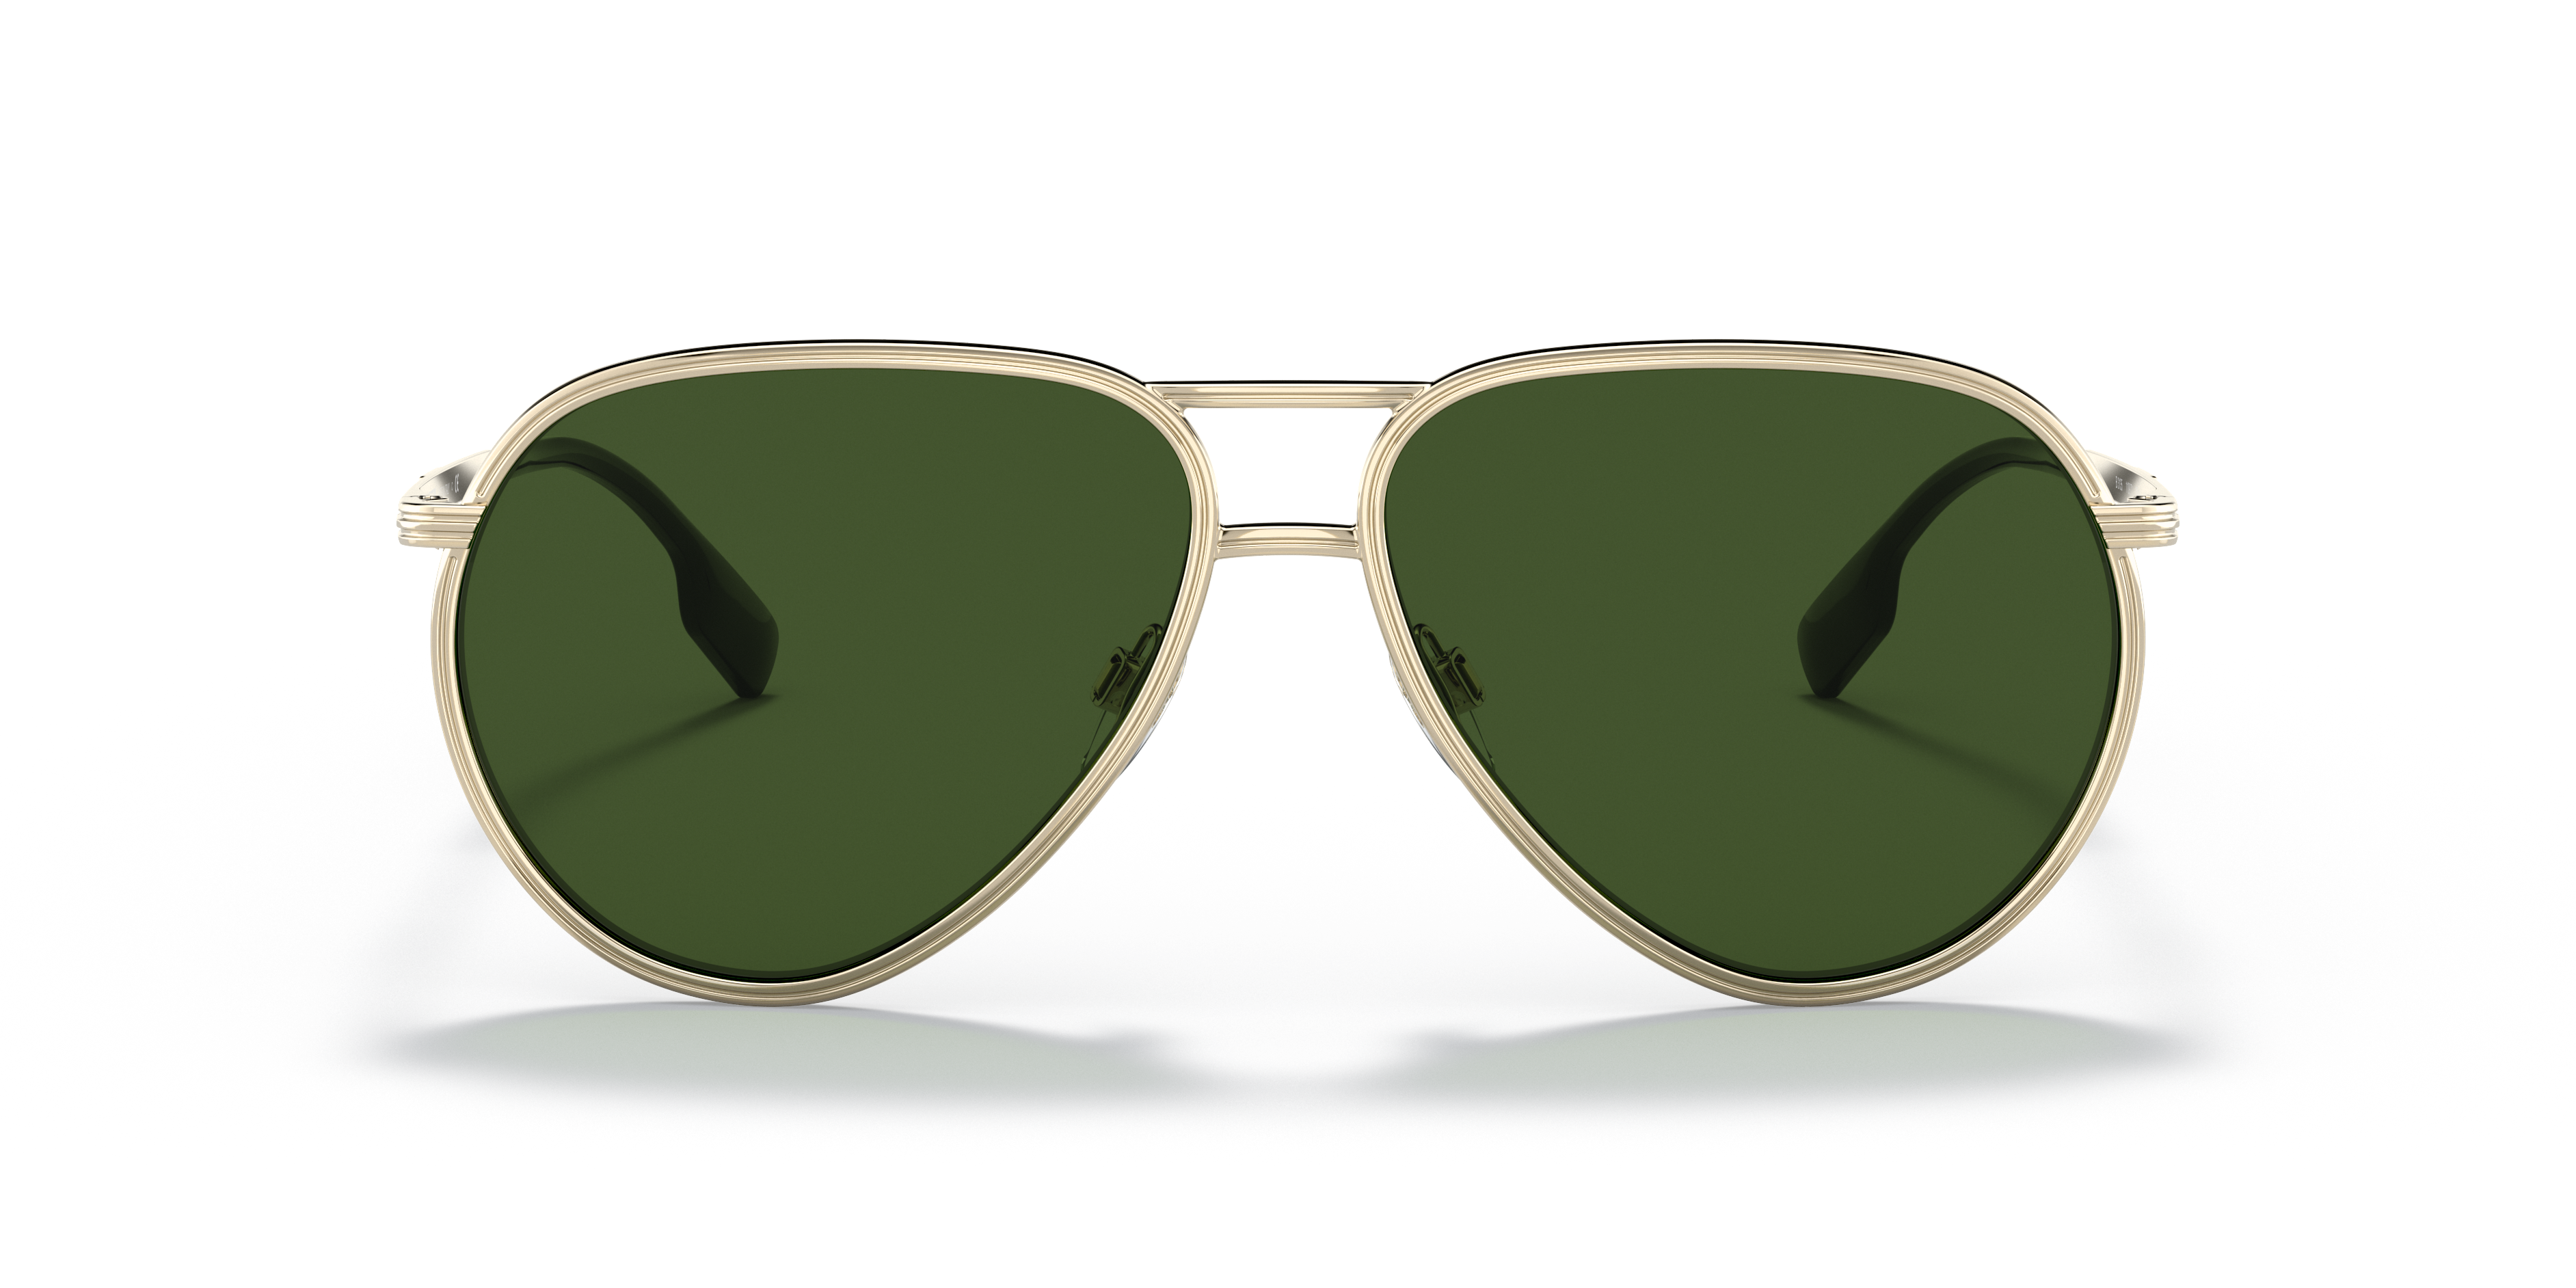 Future Tech Sunglasses: Ultra Black Z87+